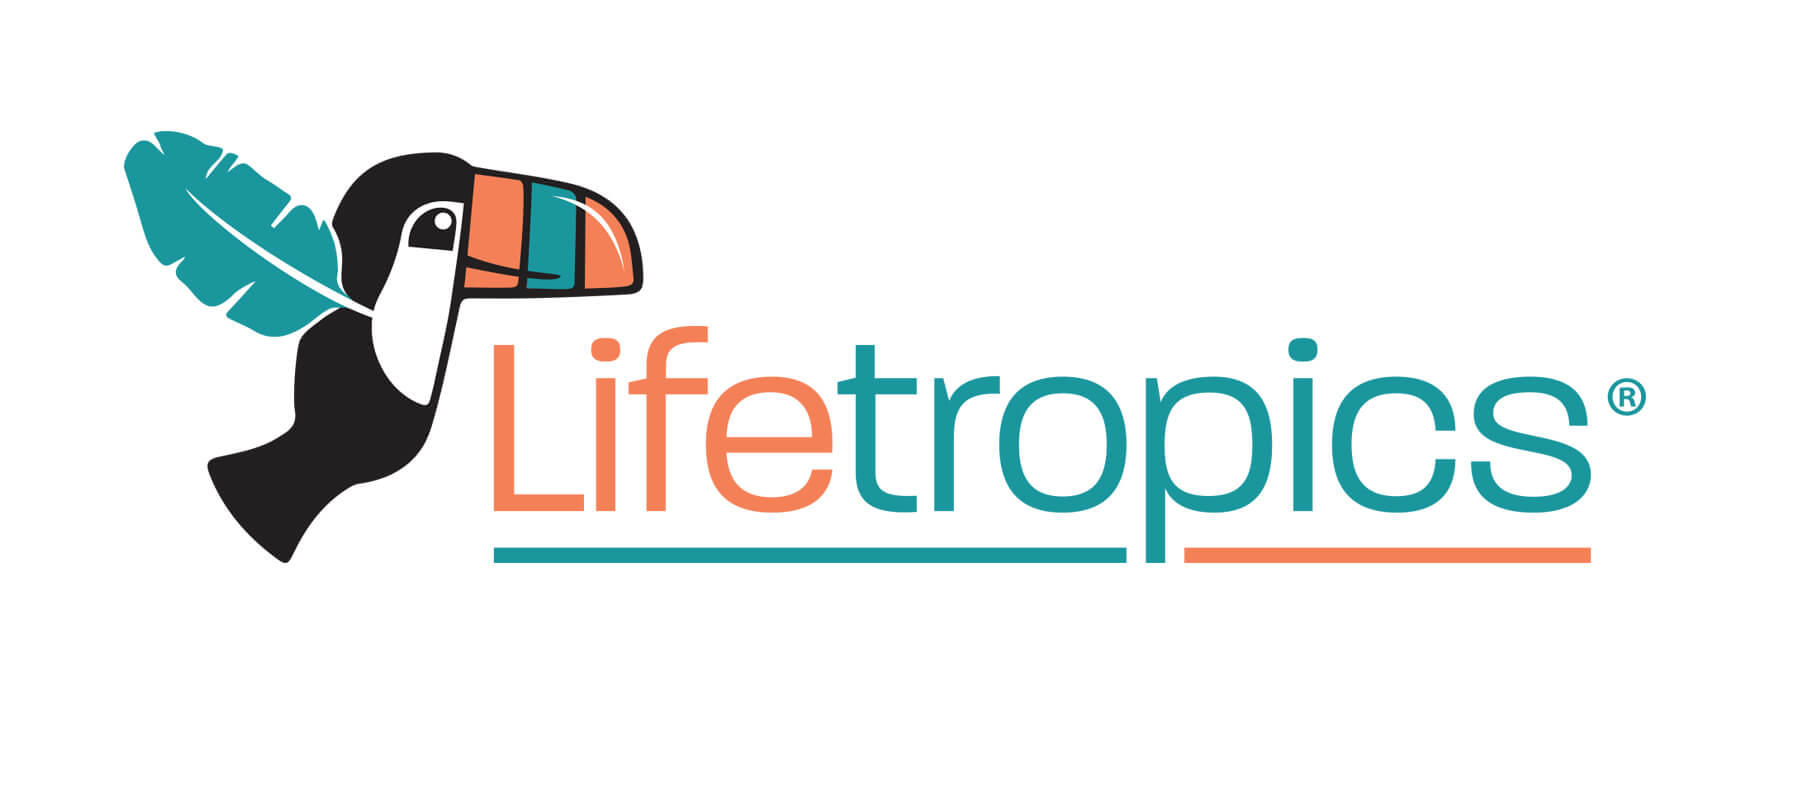 Lifetropics Gets a New Look!